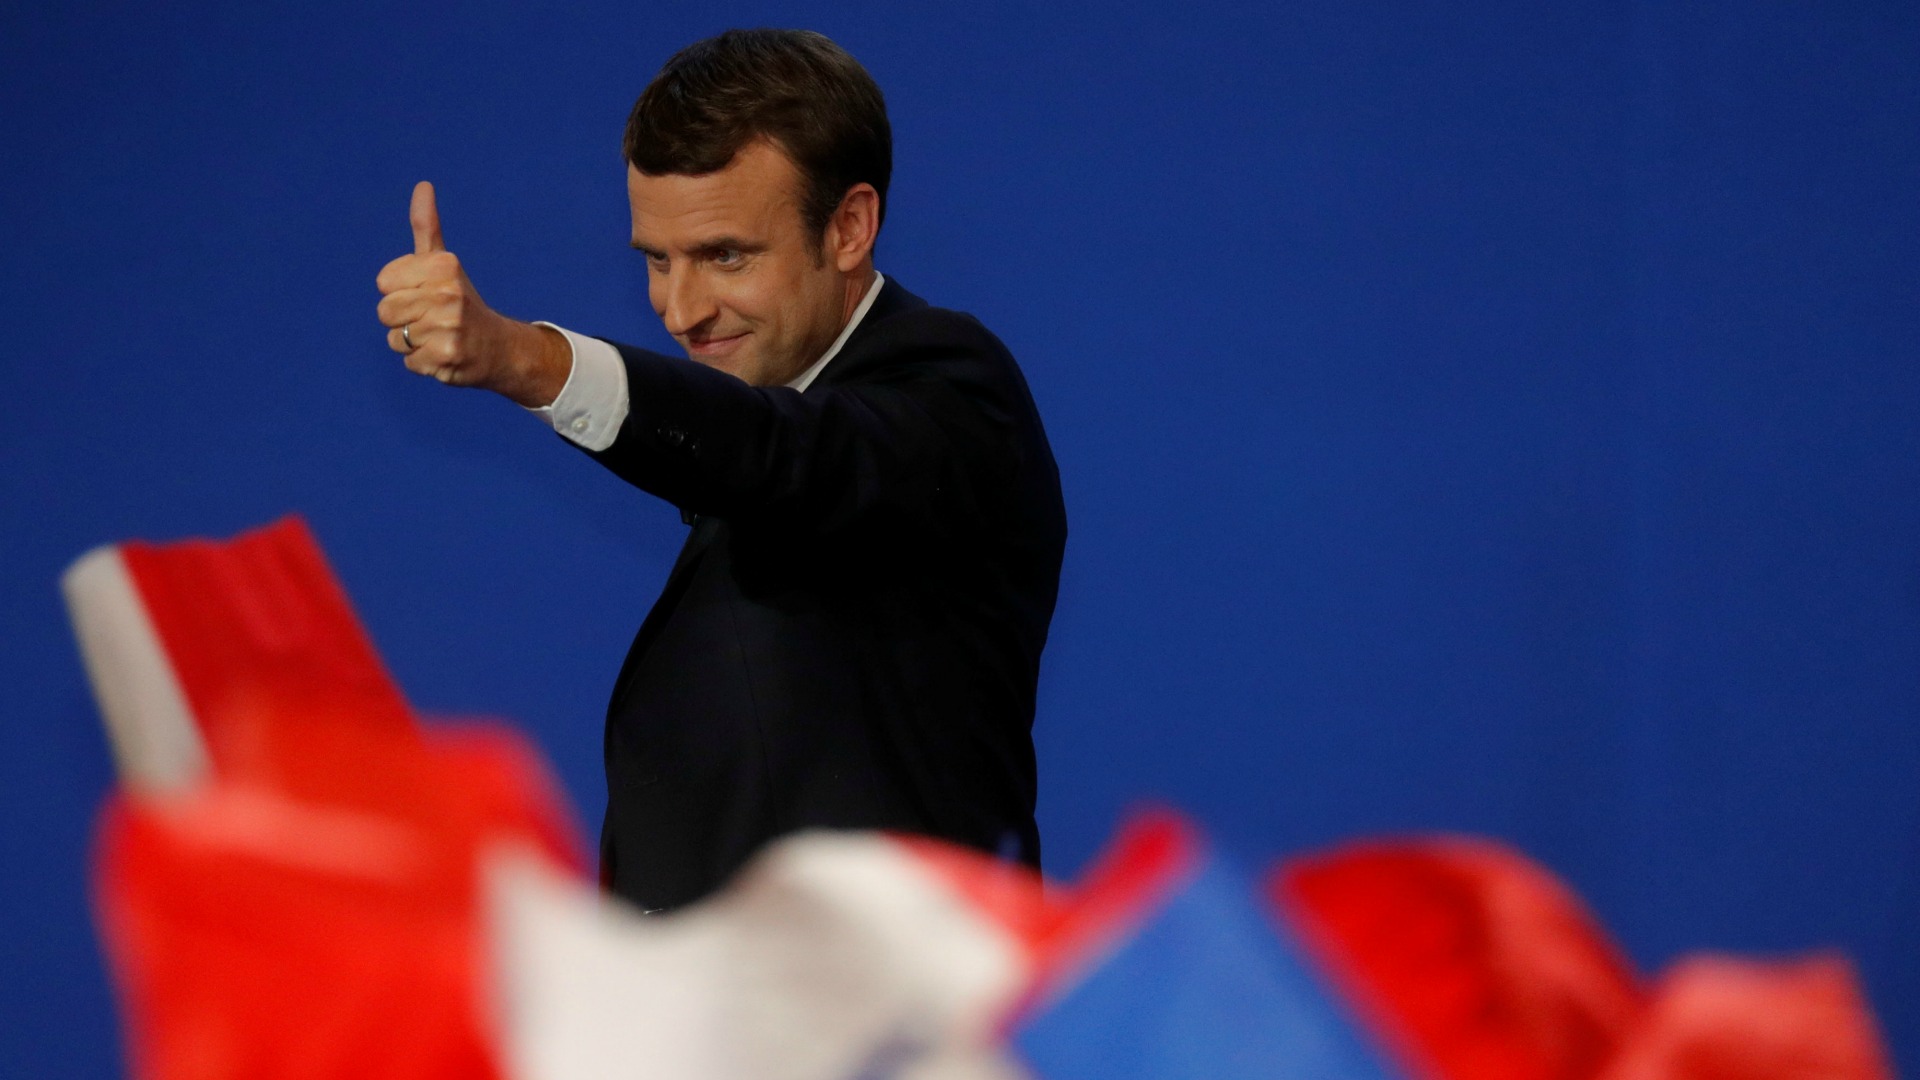 Europa confía en que Macron se convierta en el próximo presidente de Francia